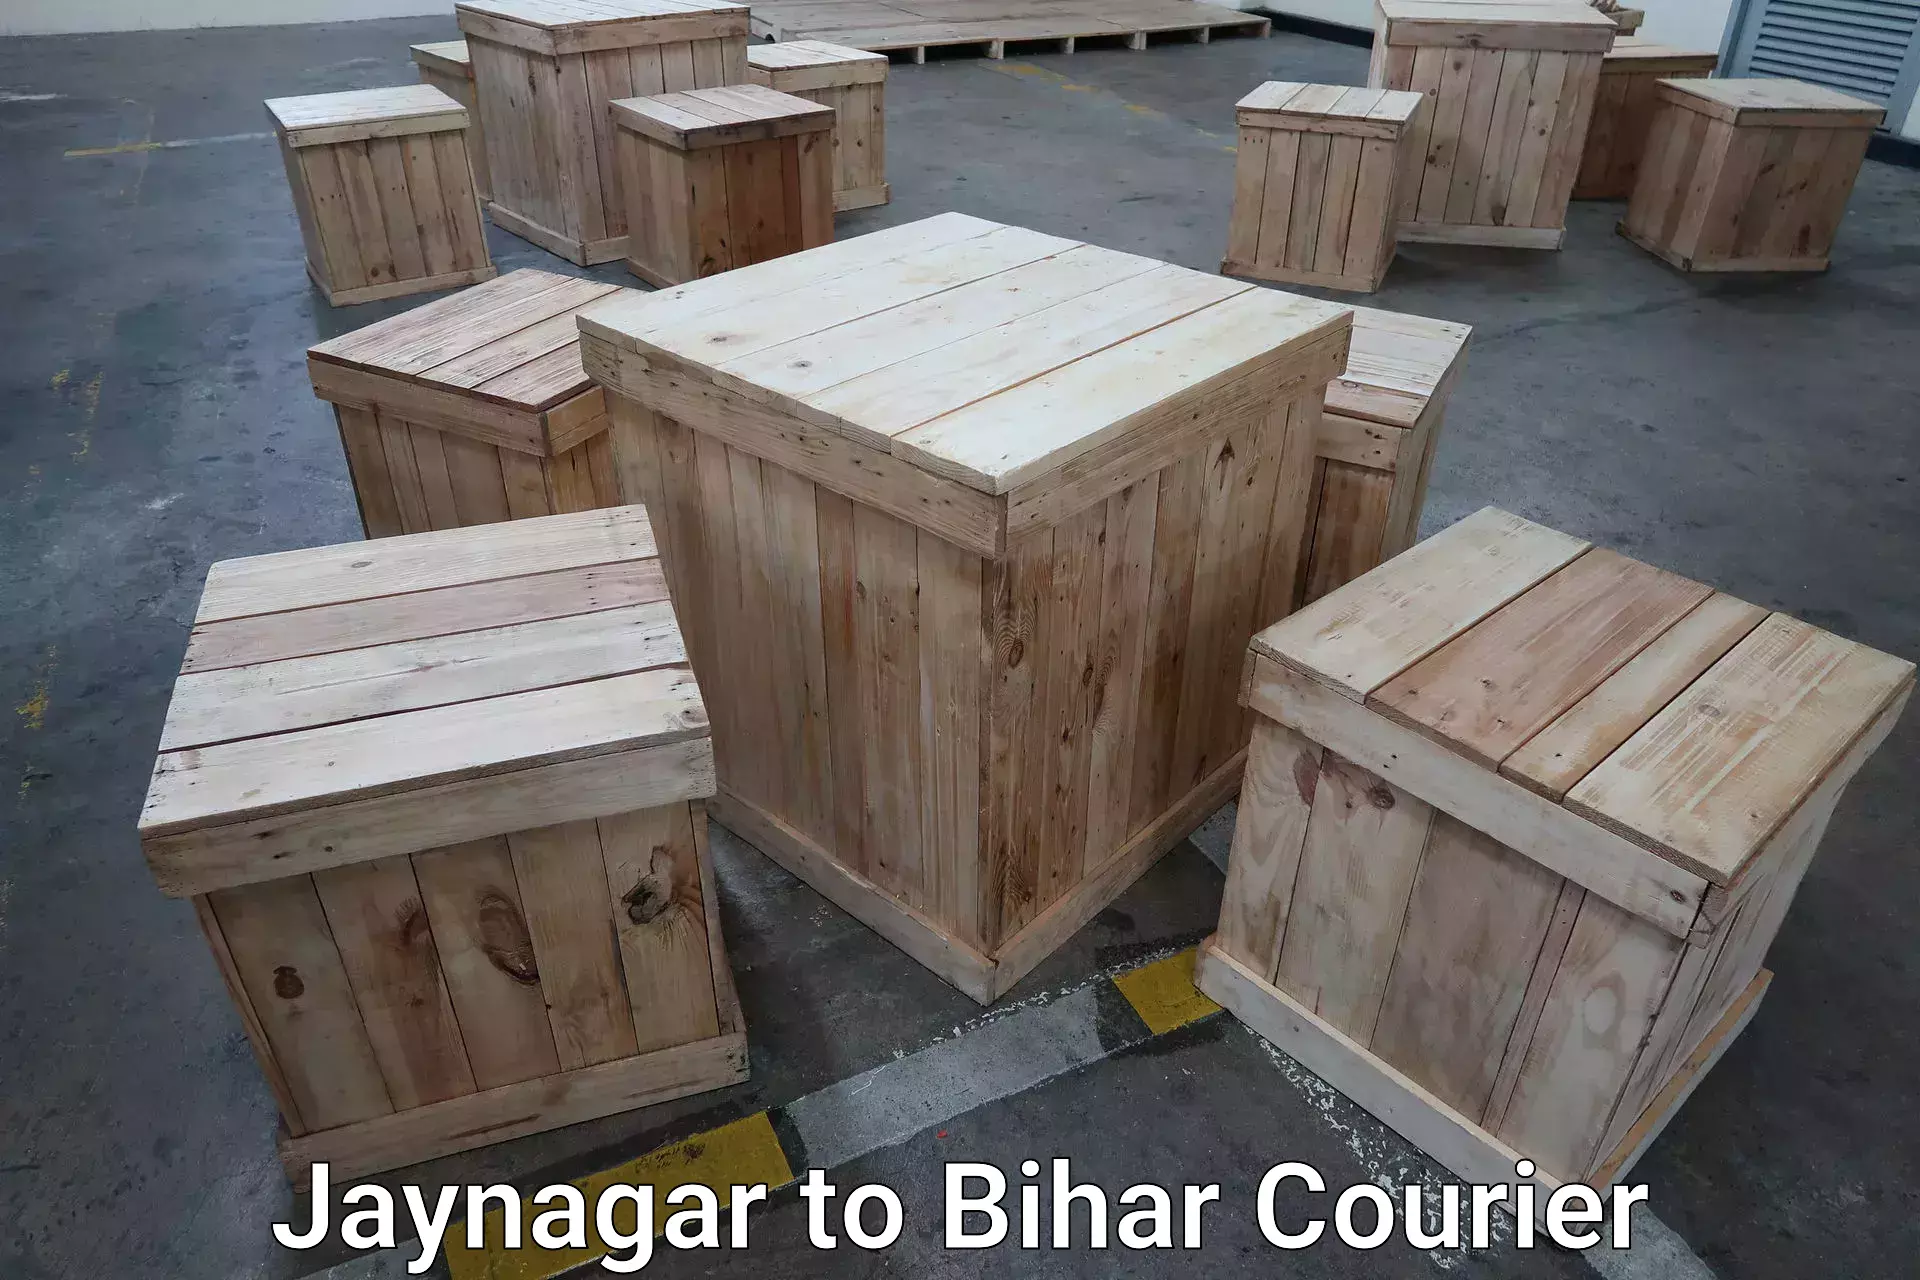 Baggage transport network Jaynagar to Kharagpur Munger